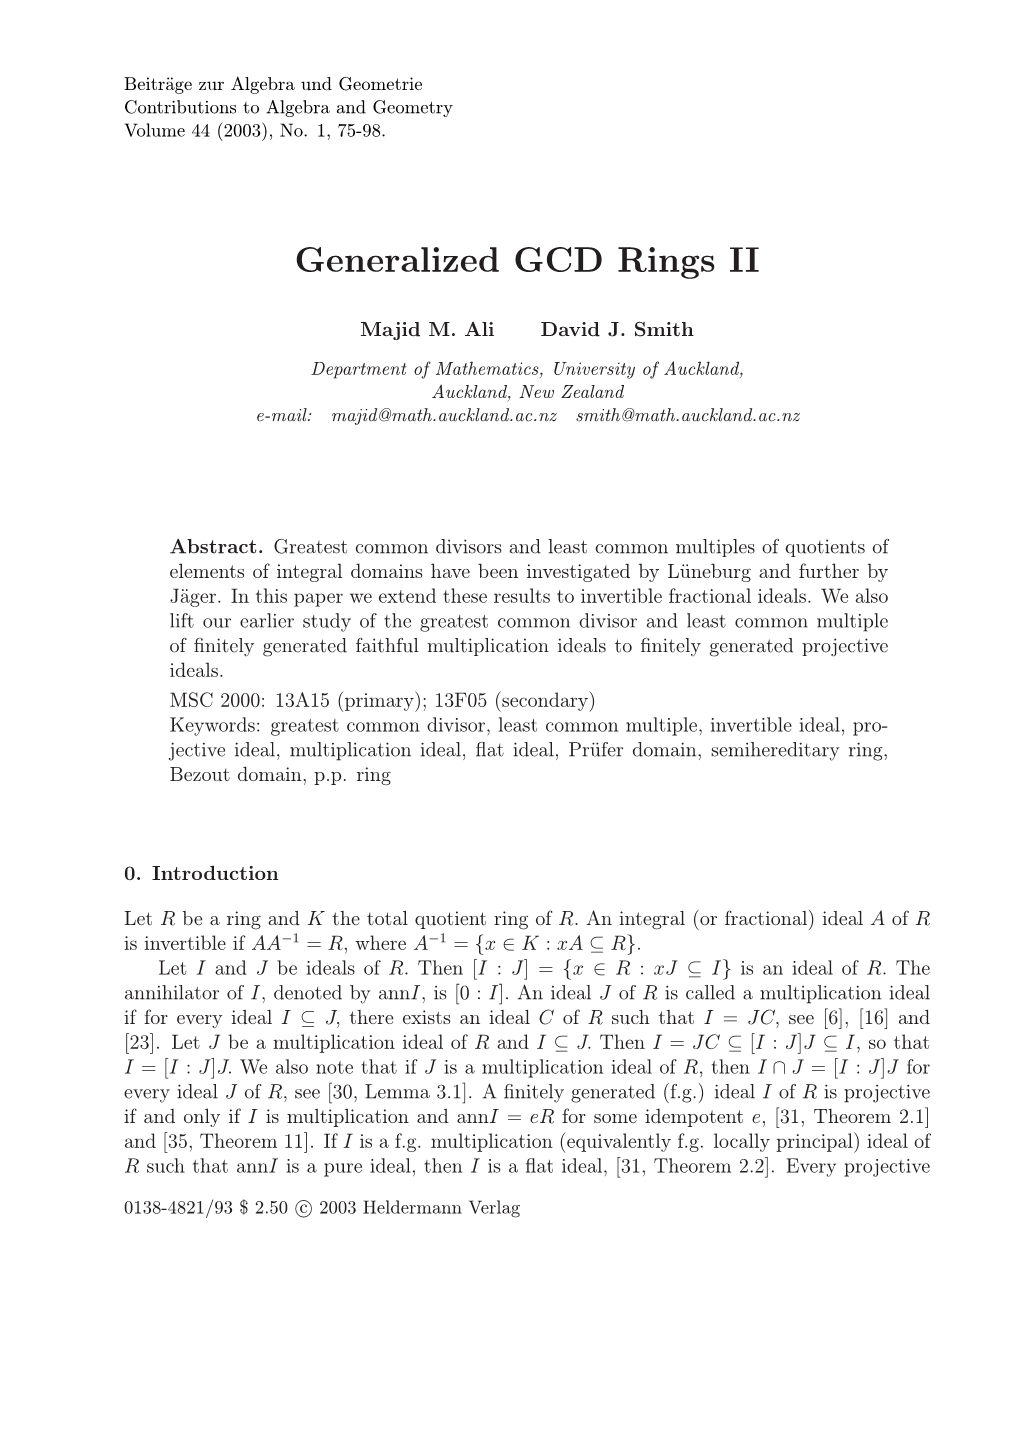 Generalized GCD Rings II